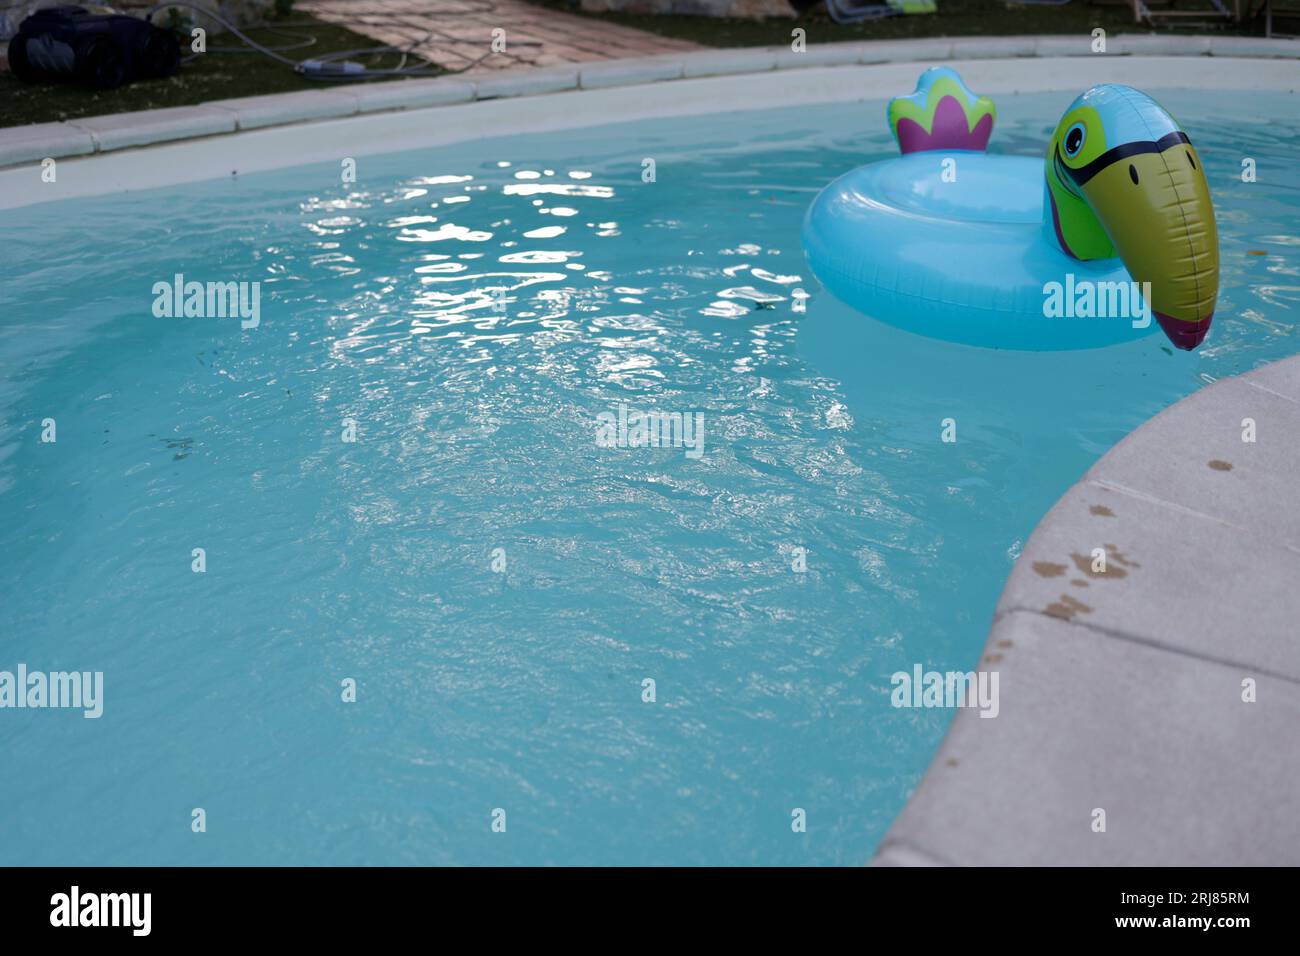 Jouet gonflable bleu oiseau dans la piscine Banque D'Images